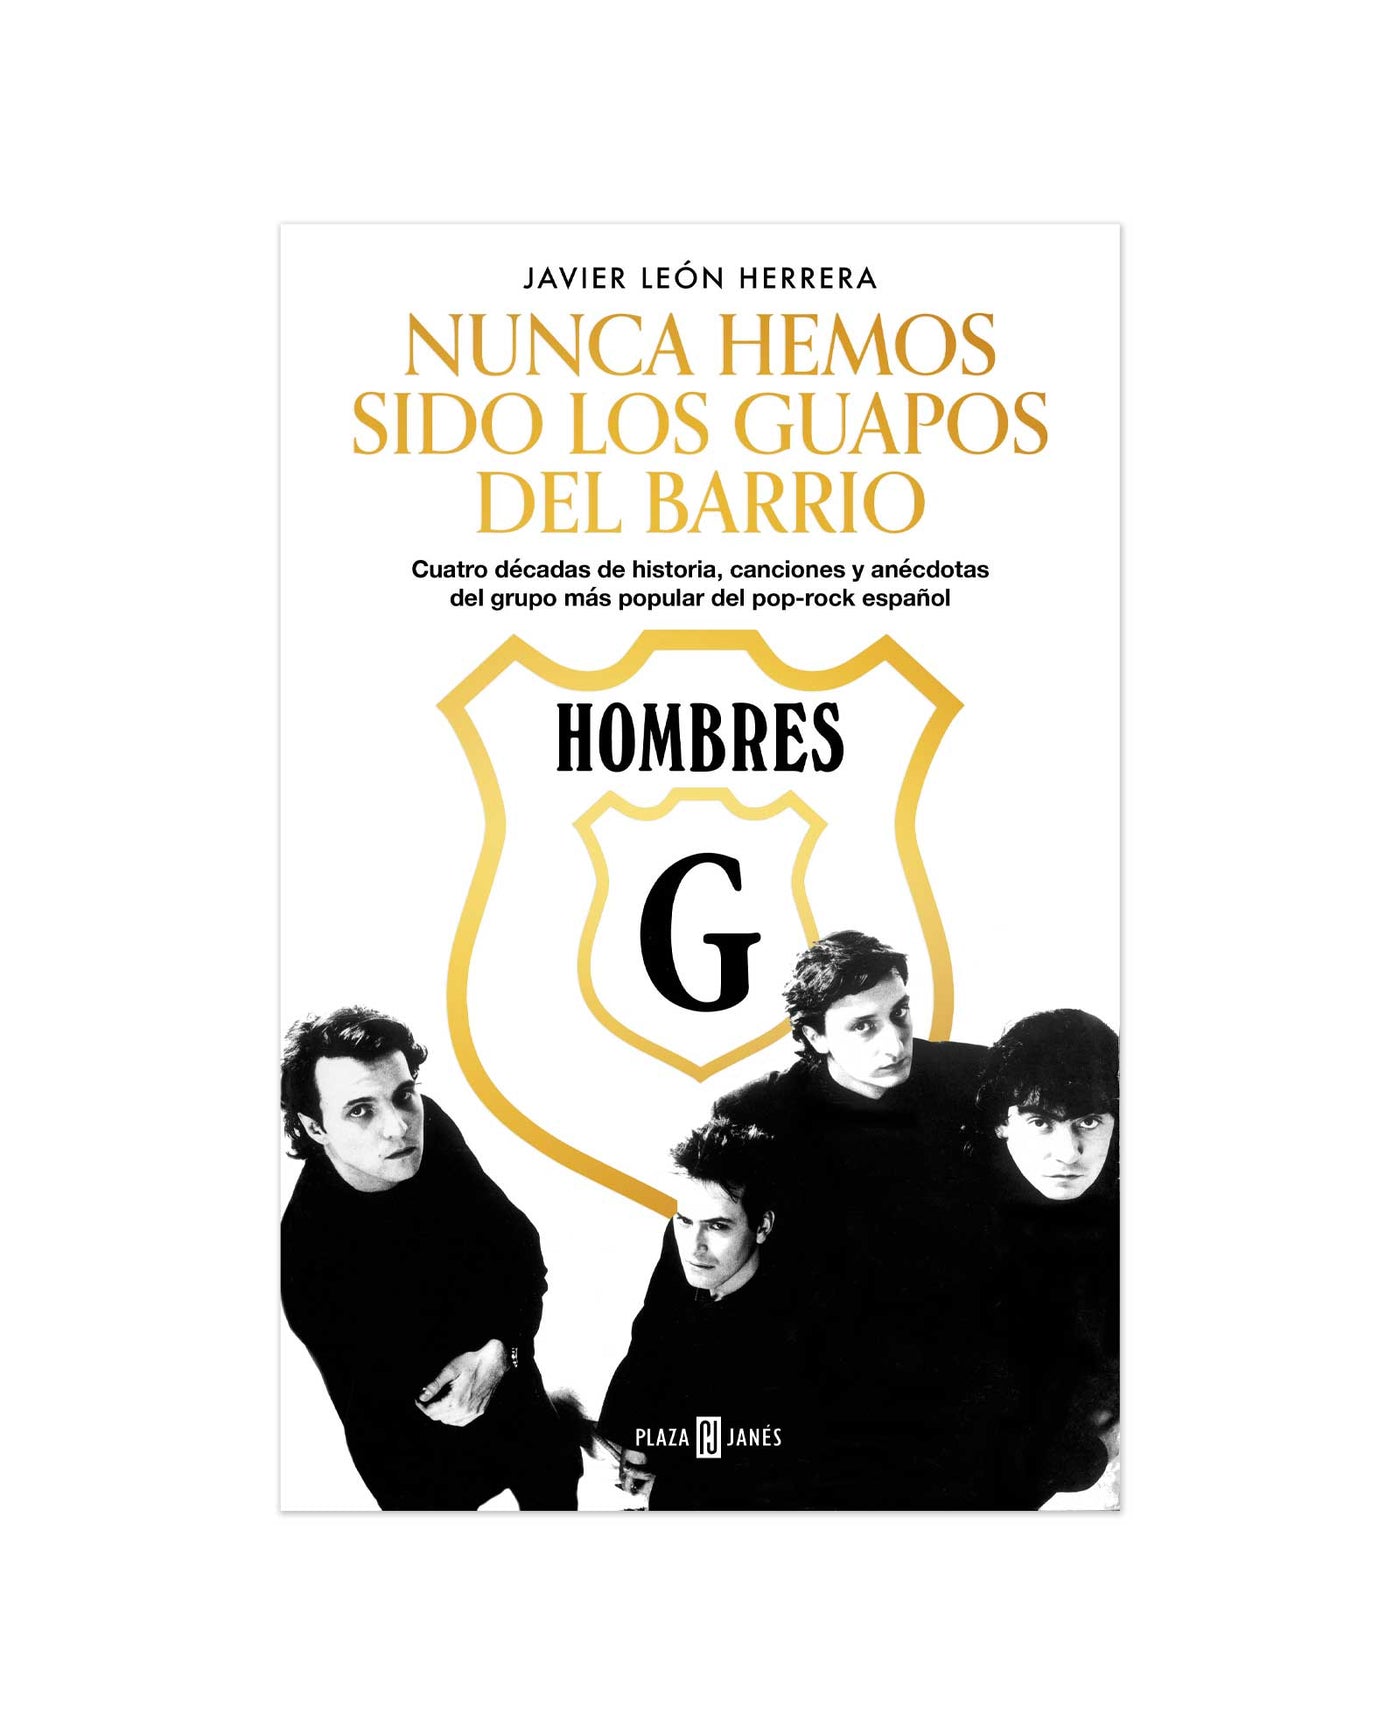 Libro Hombres G Nunca Hemos Sido Los Guapos Del Barrio 0410